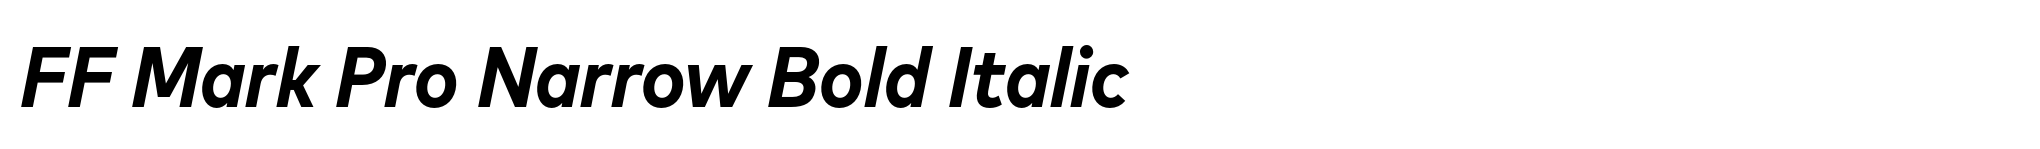 FF Mark Pro Narrow Bold Italic image